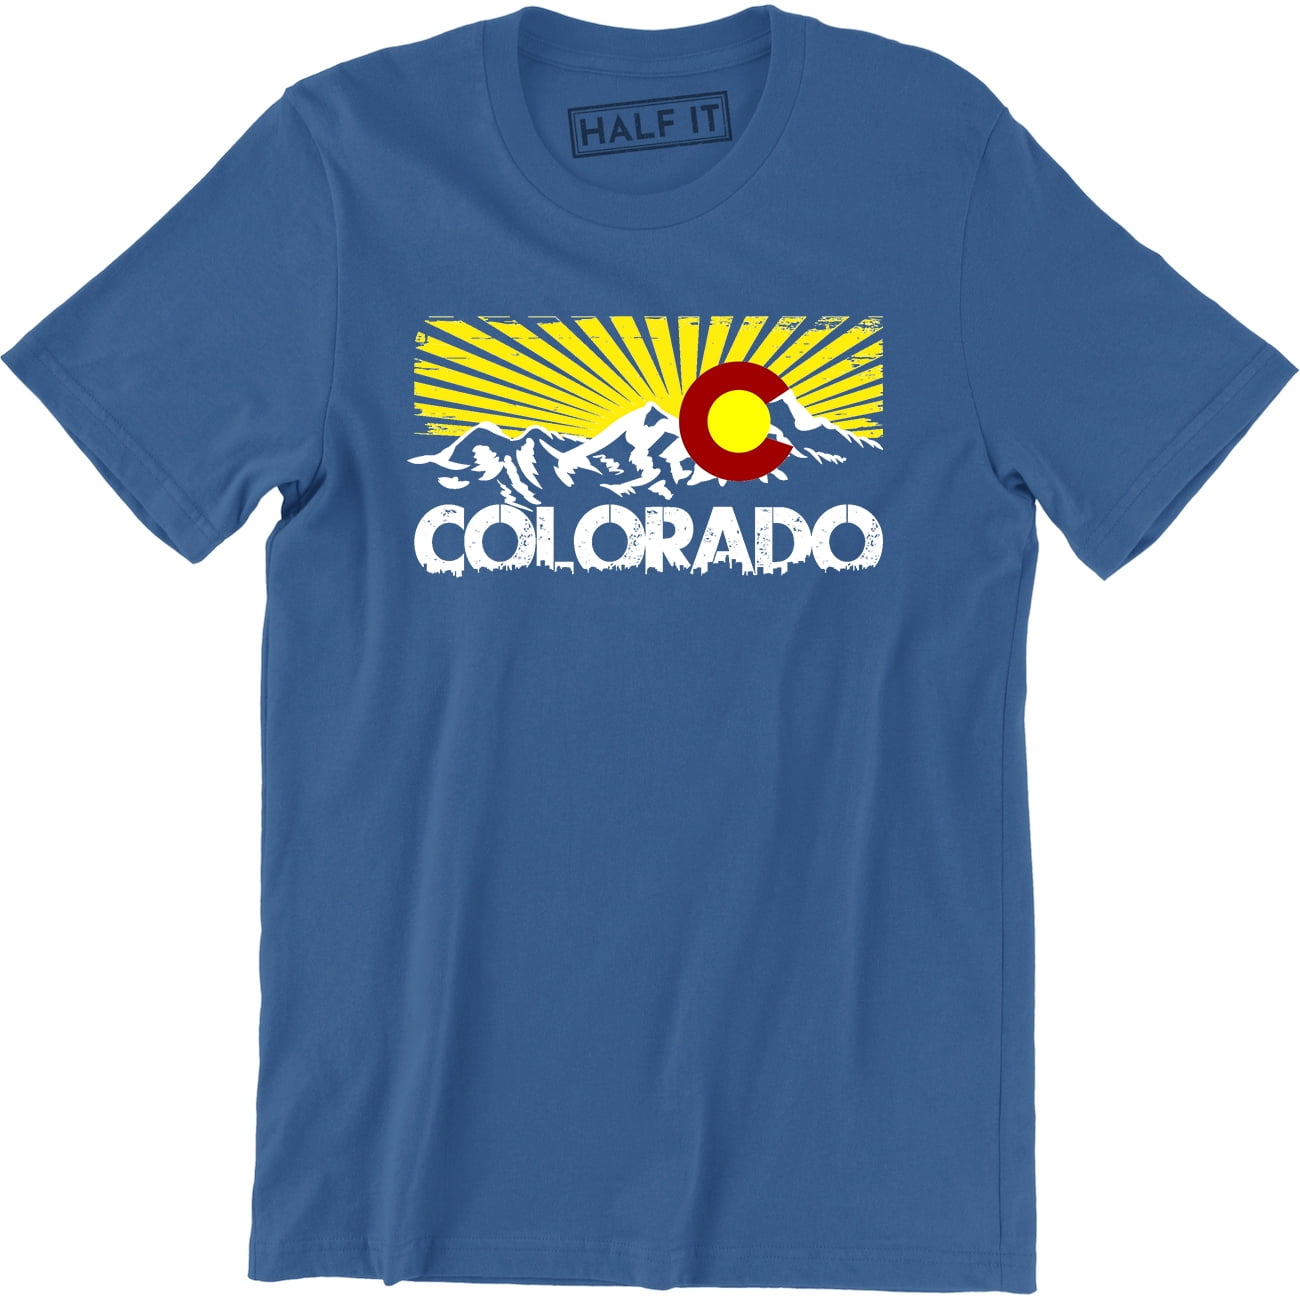 Black Retro Vintage 1980s Denver Colorado T-Shirt Men's S-6XL  US 100% Cotton